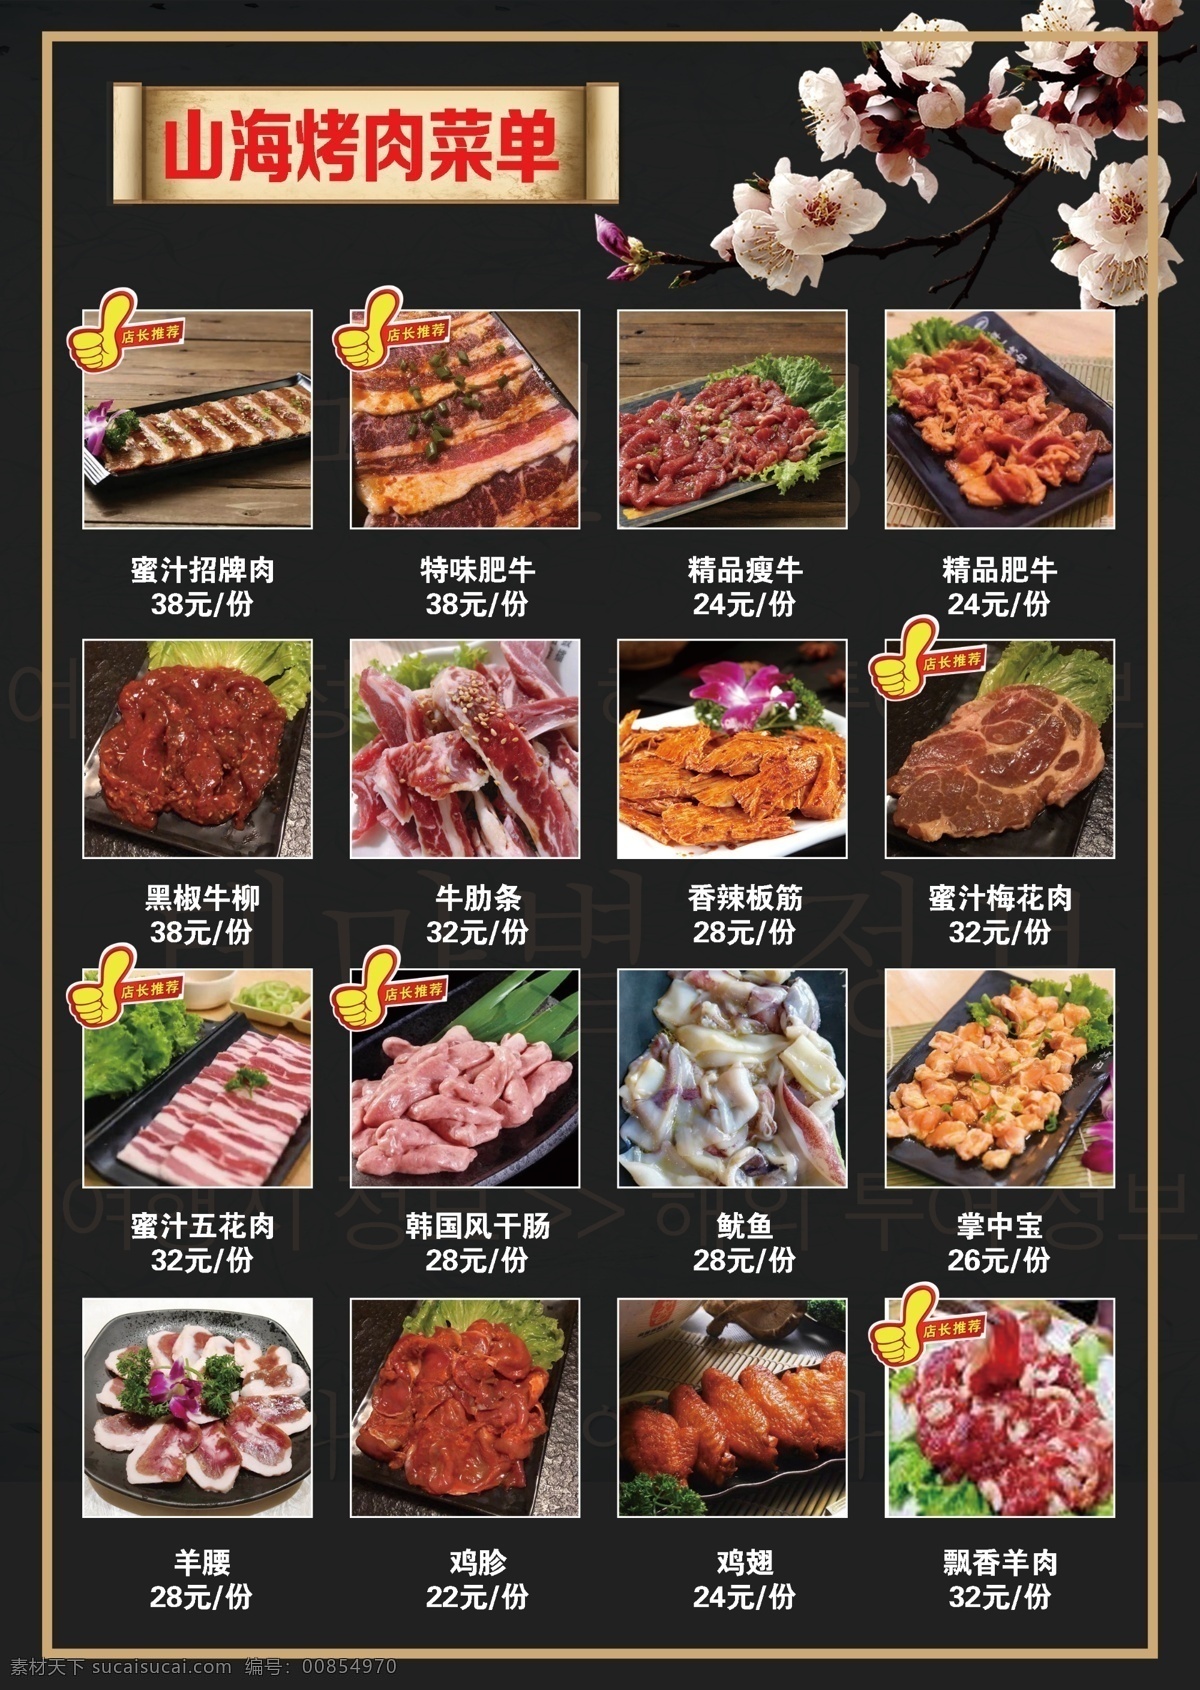 烤肉菜单 烤肉 韩式烤肉 招牌菜 推荐烤肉 烤肉单页 广告宣传页